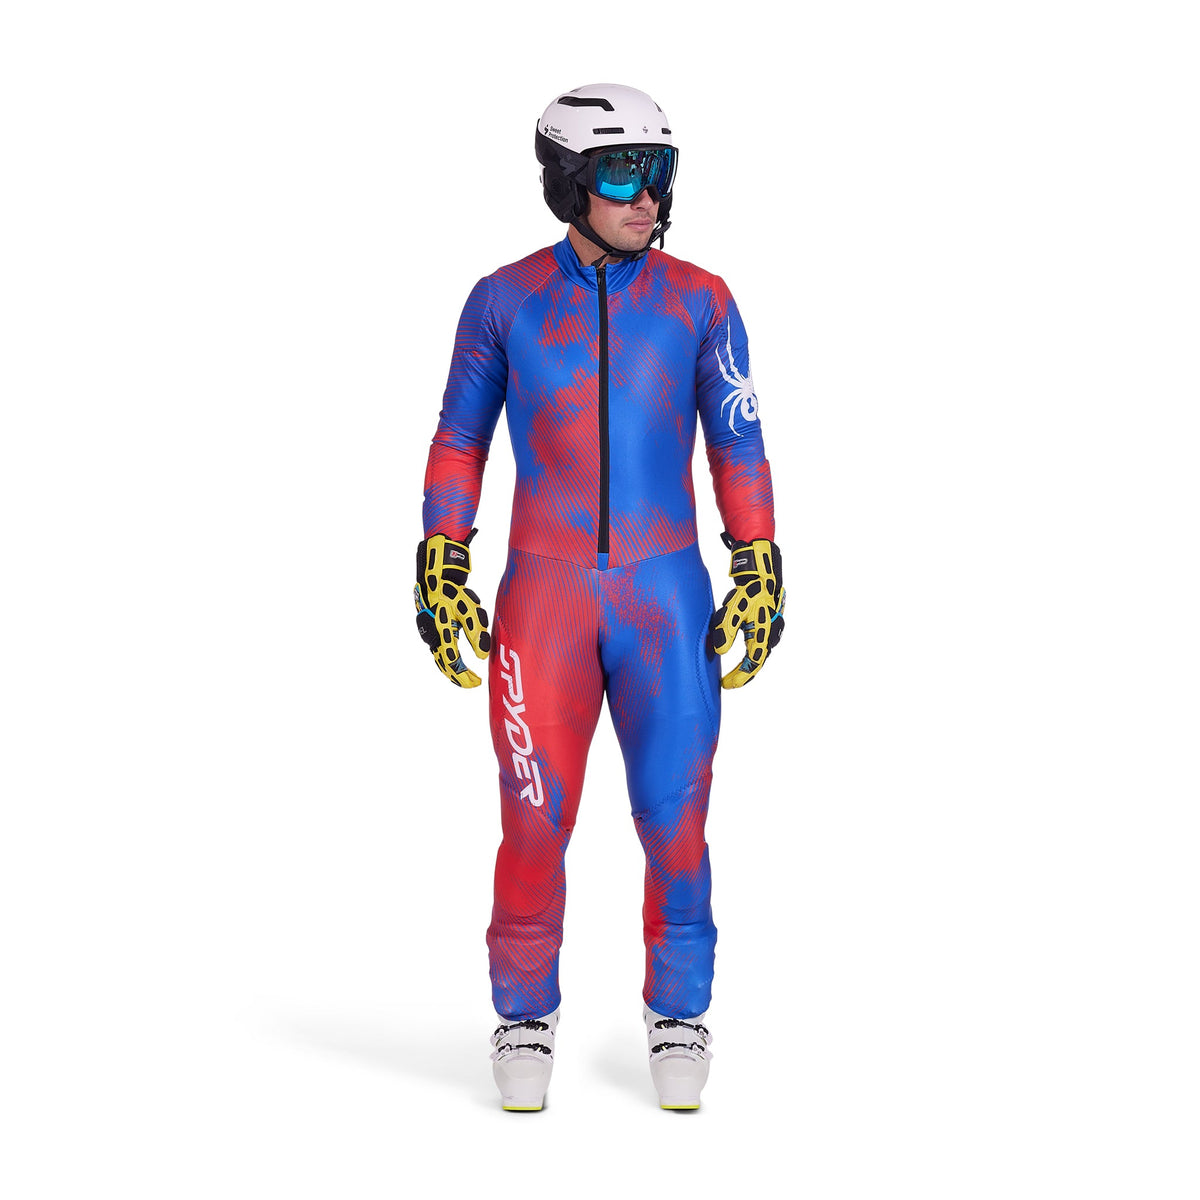 Spyder Performance GS Race Suit Ski Racing Suit Blue